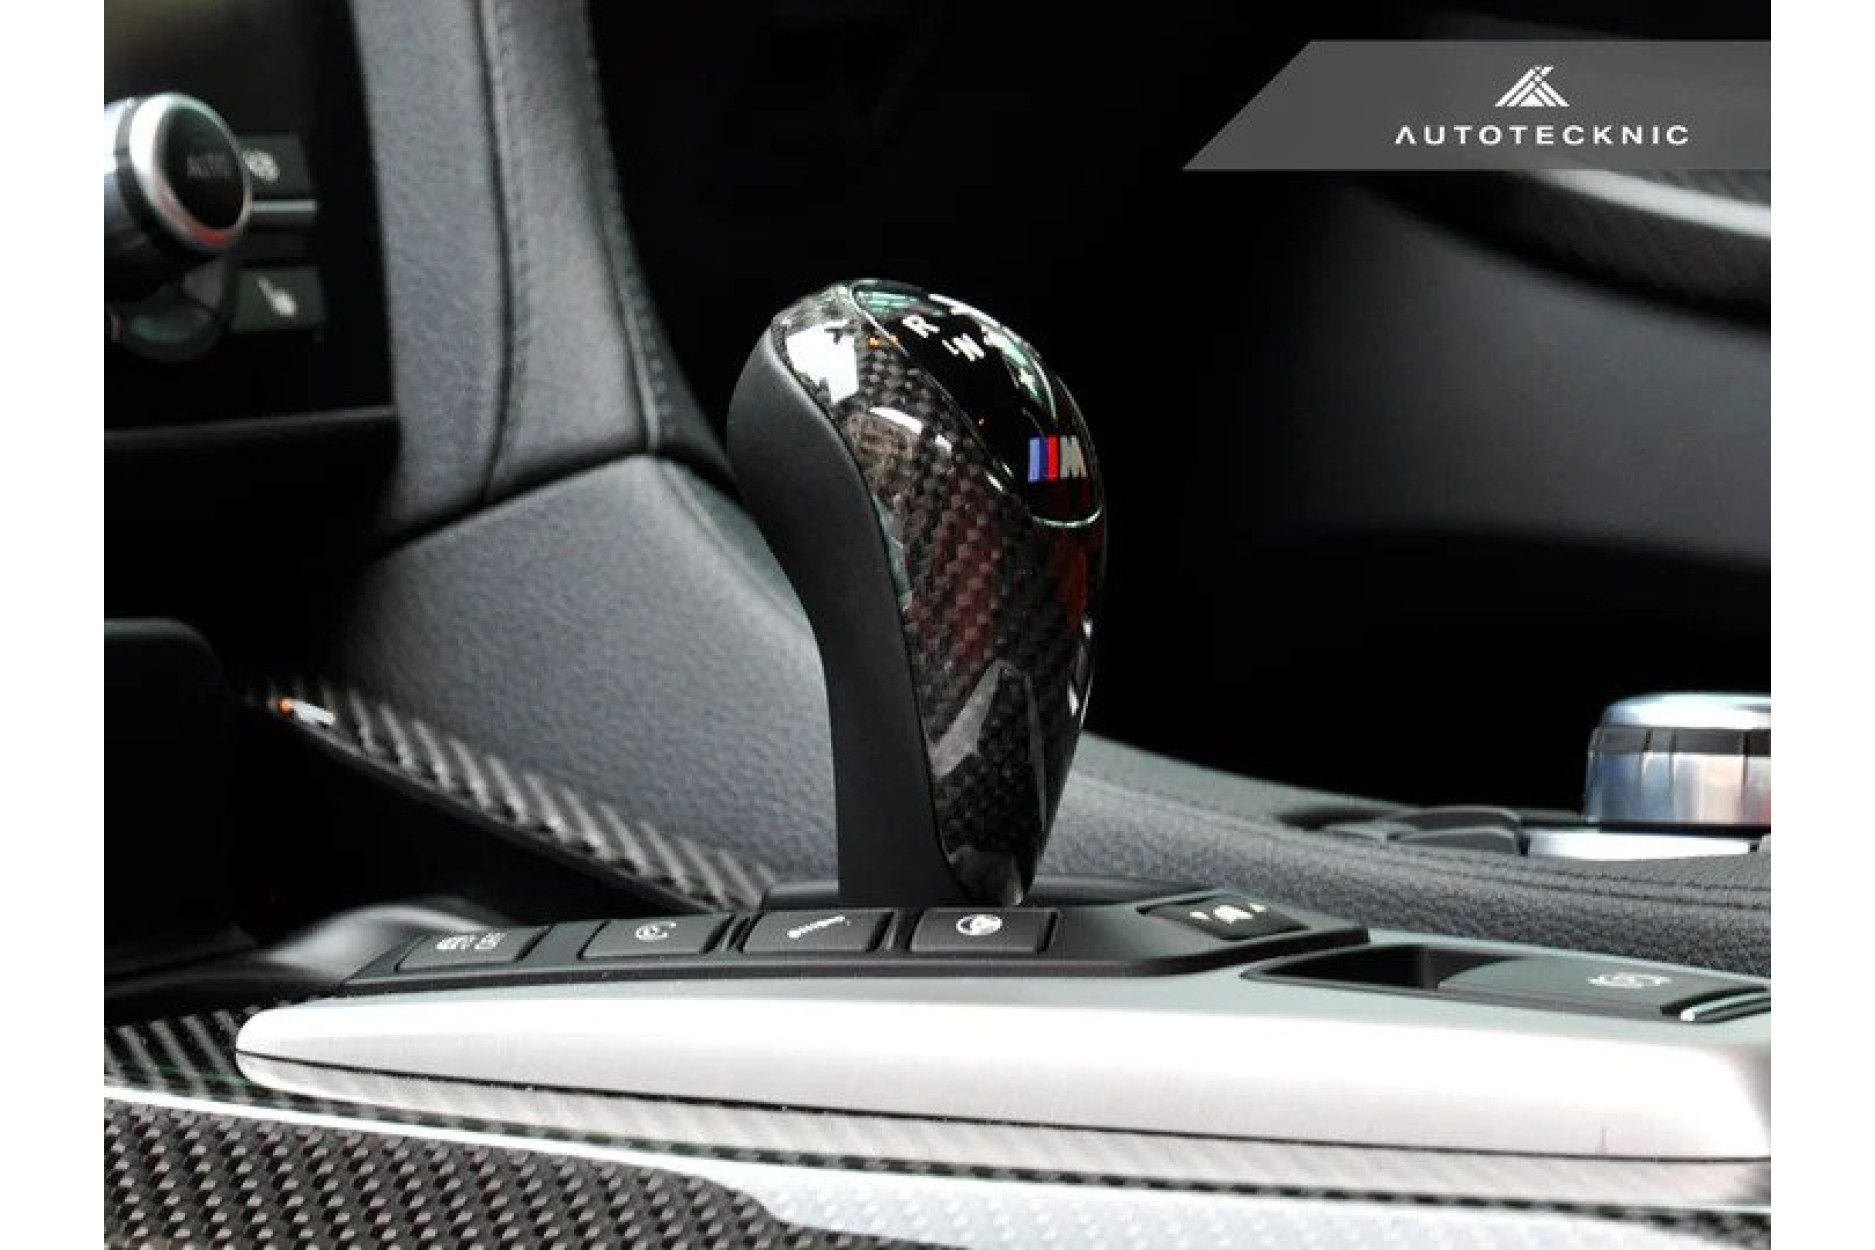 Autotecknic Carbon Schaltknauf Abdeckung für BMW F87 M2 und M2